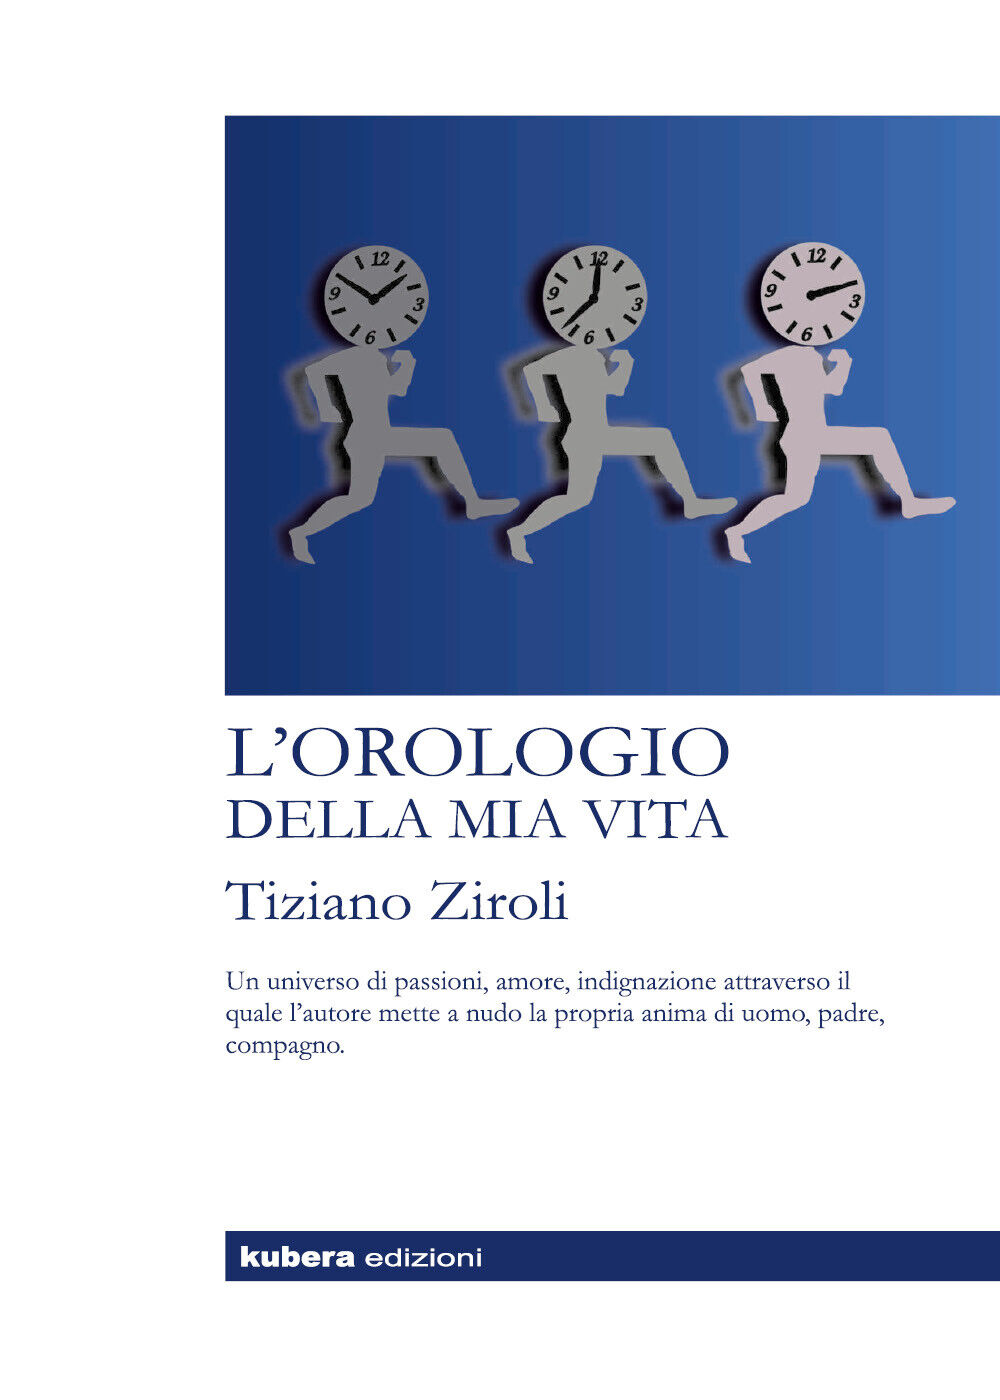 L'orologio della mia vita di Tiziano Ziroli,  2018,  Kubera Edizioni